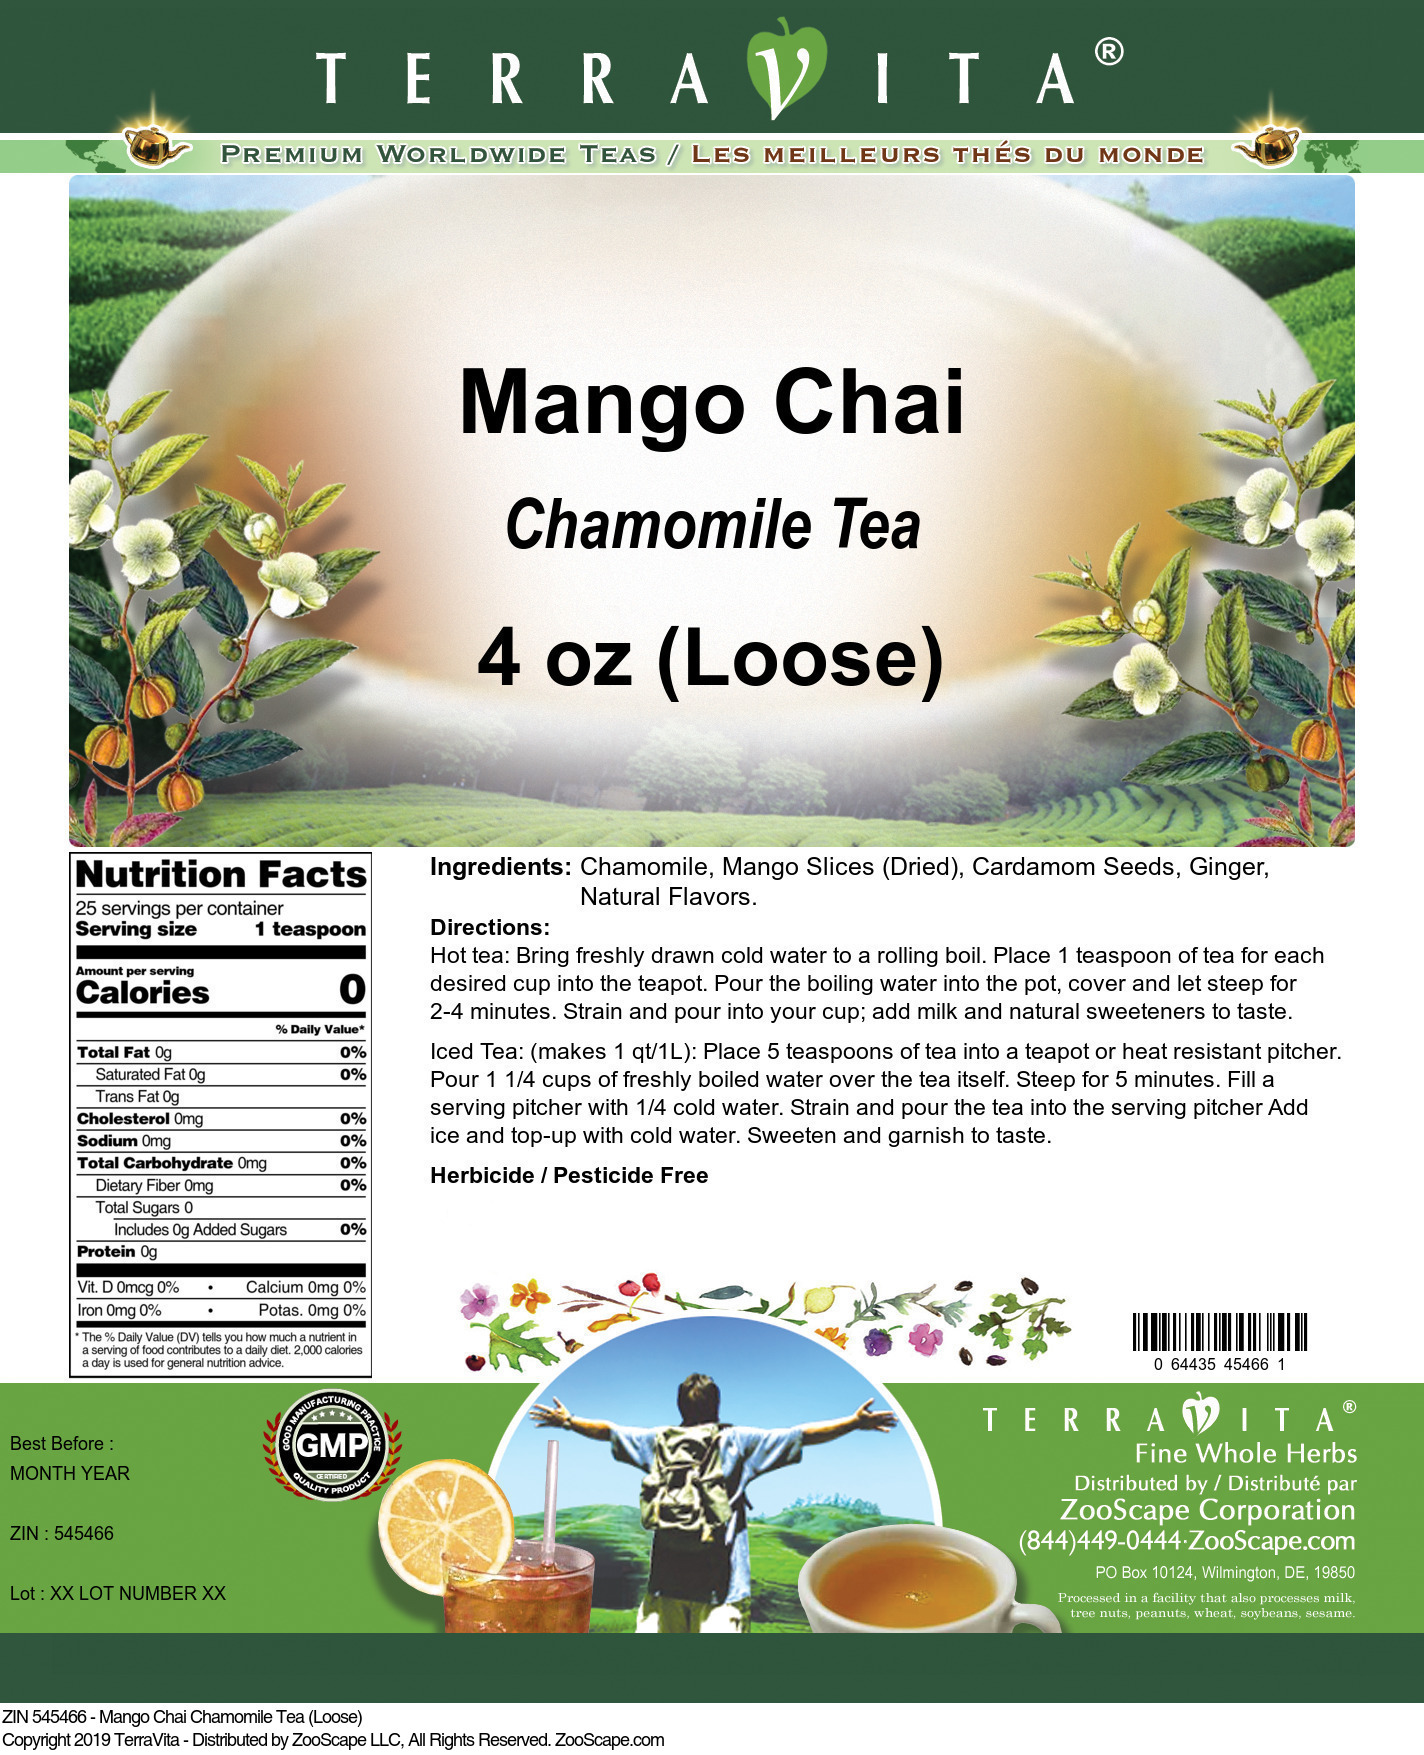 Mango Chai Chamomile Tea (Loose) - Label